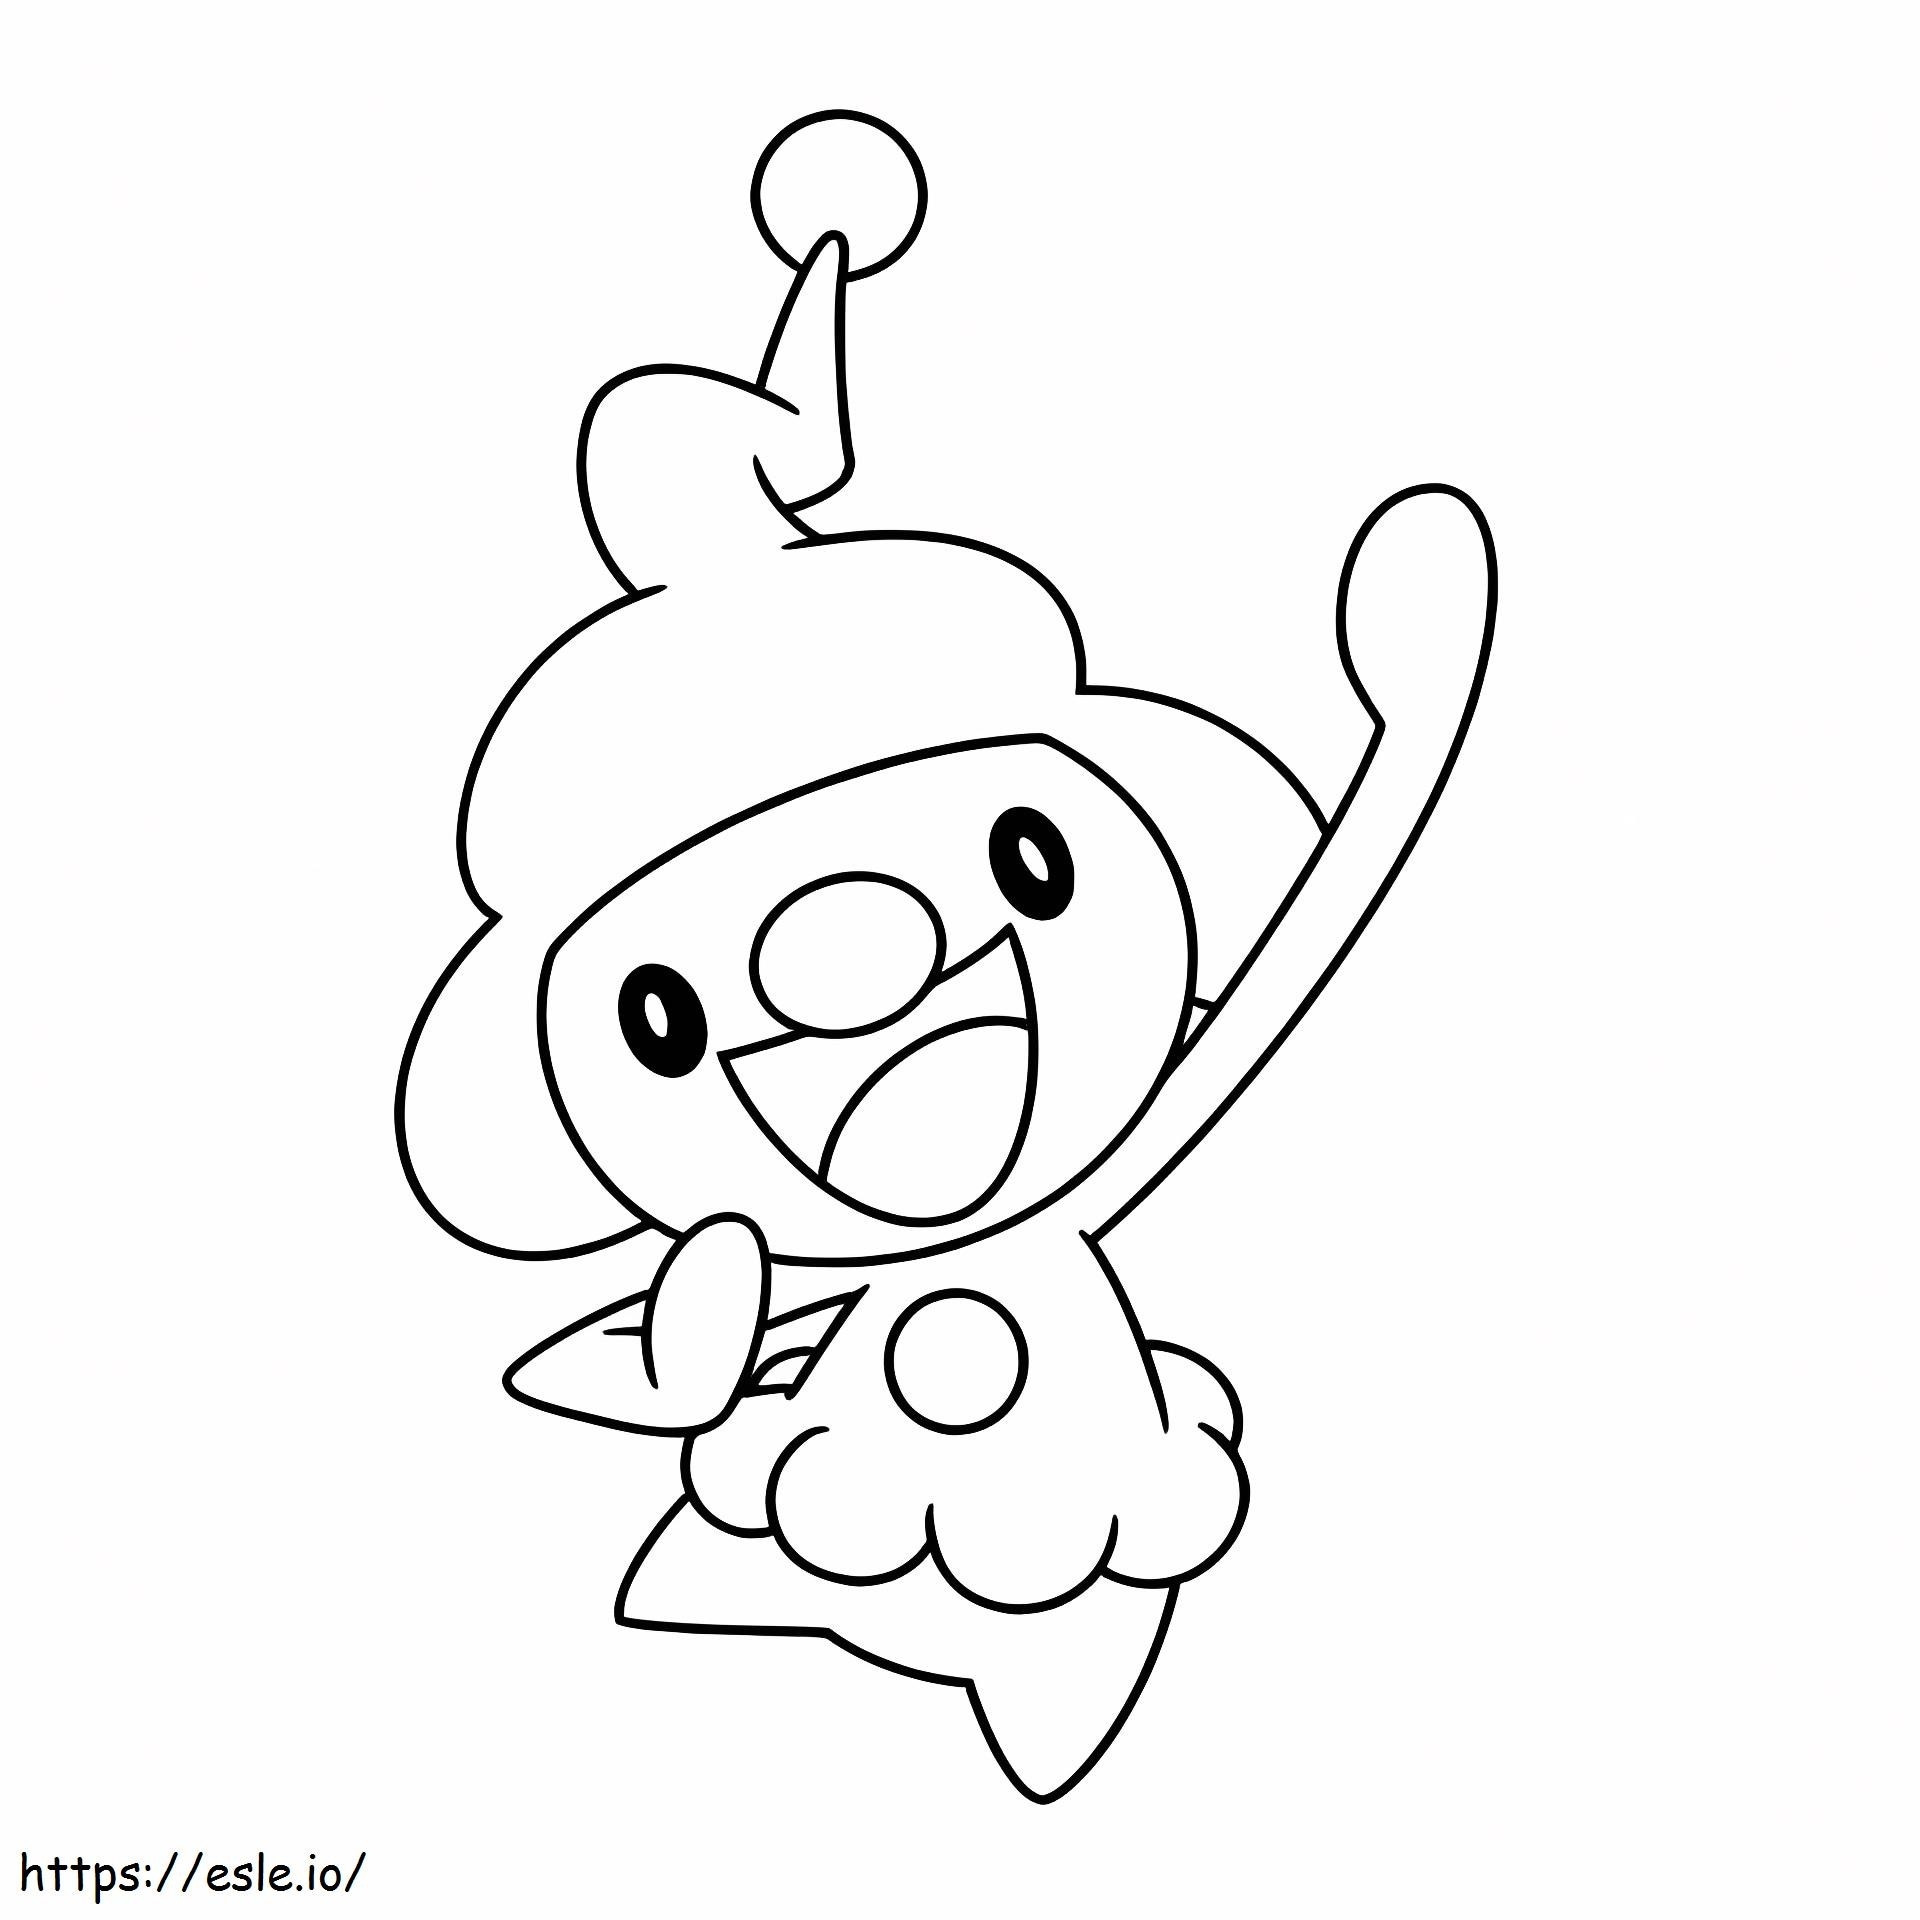 Coloriage Pokémon Mime Junior à imprimer dessin